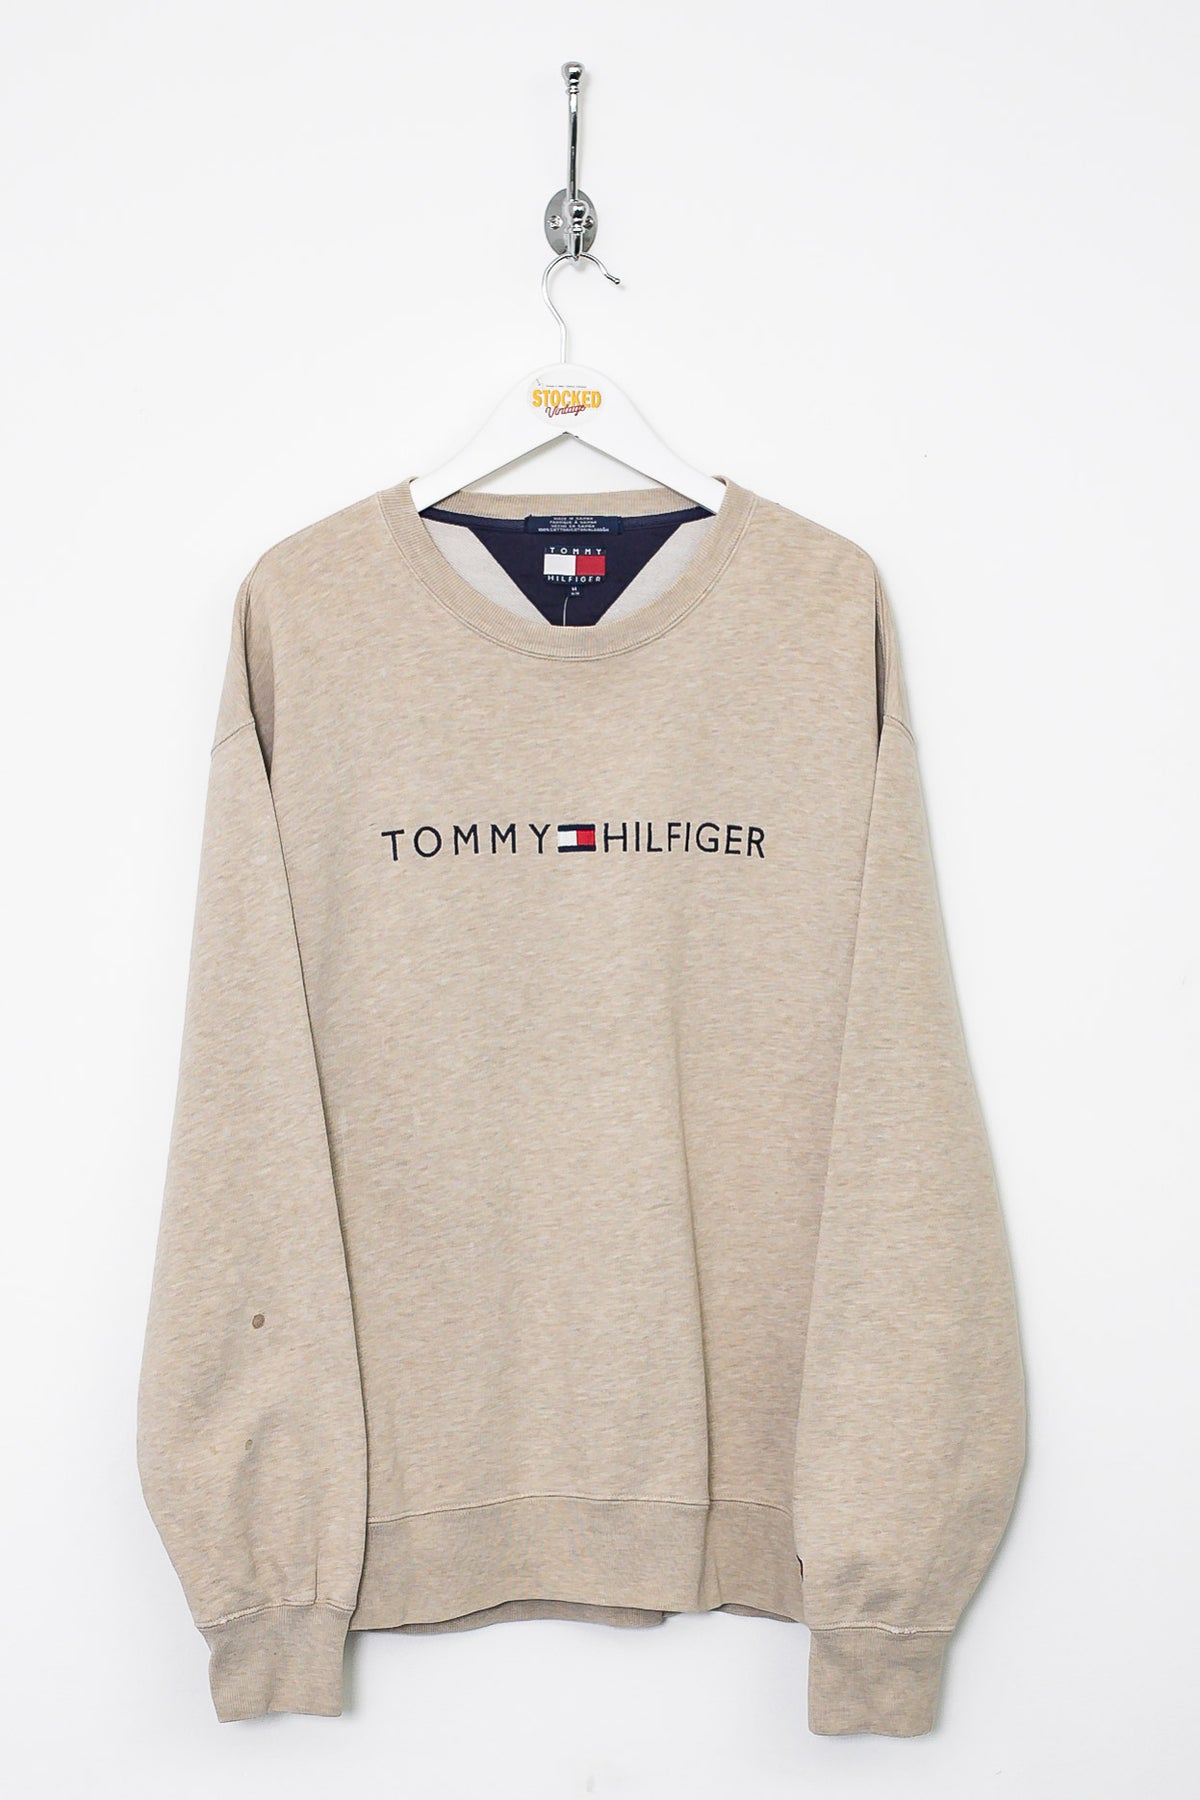 90s Tommy Hilfiger Sweatshirt (M)